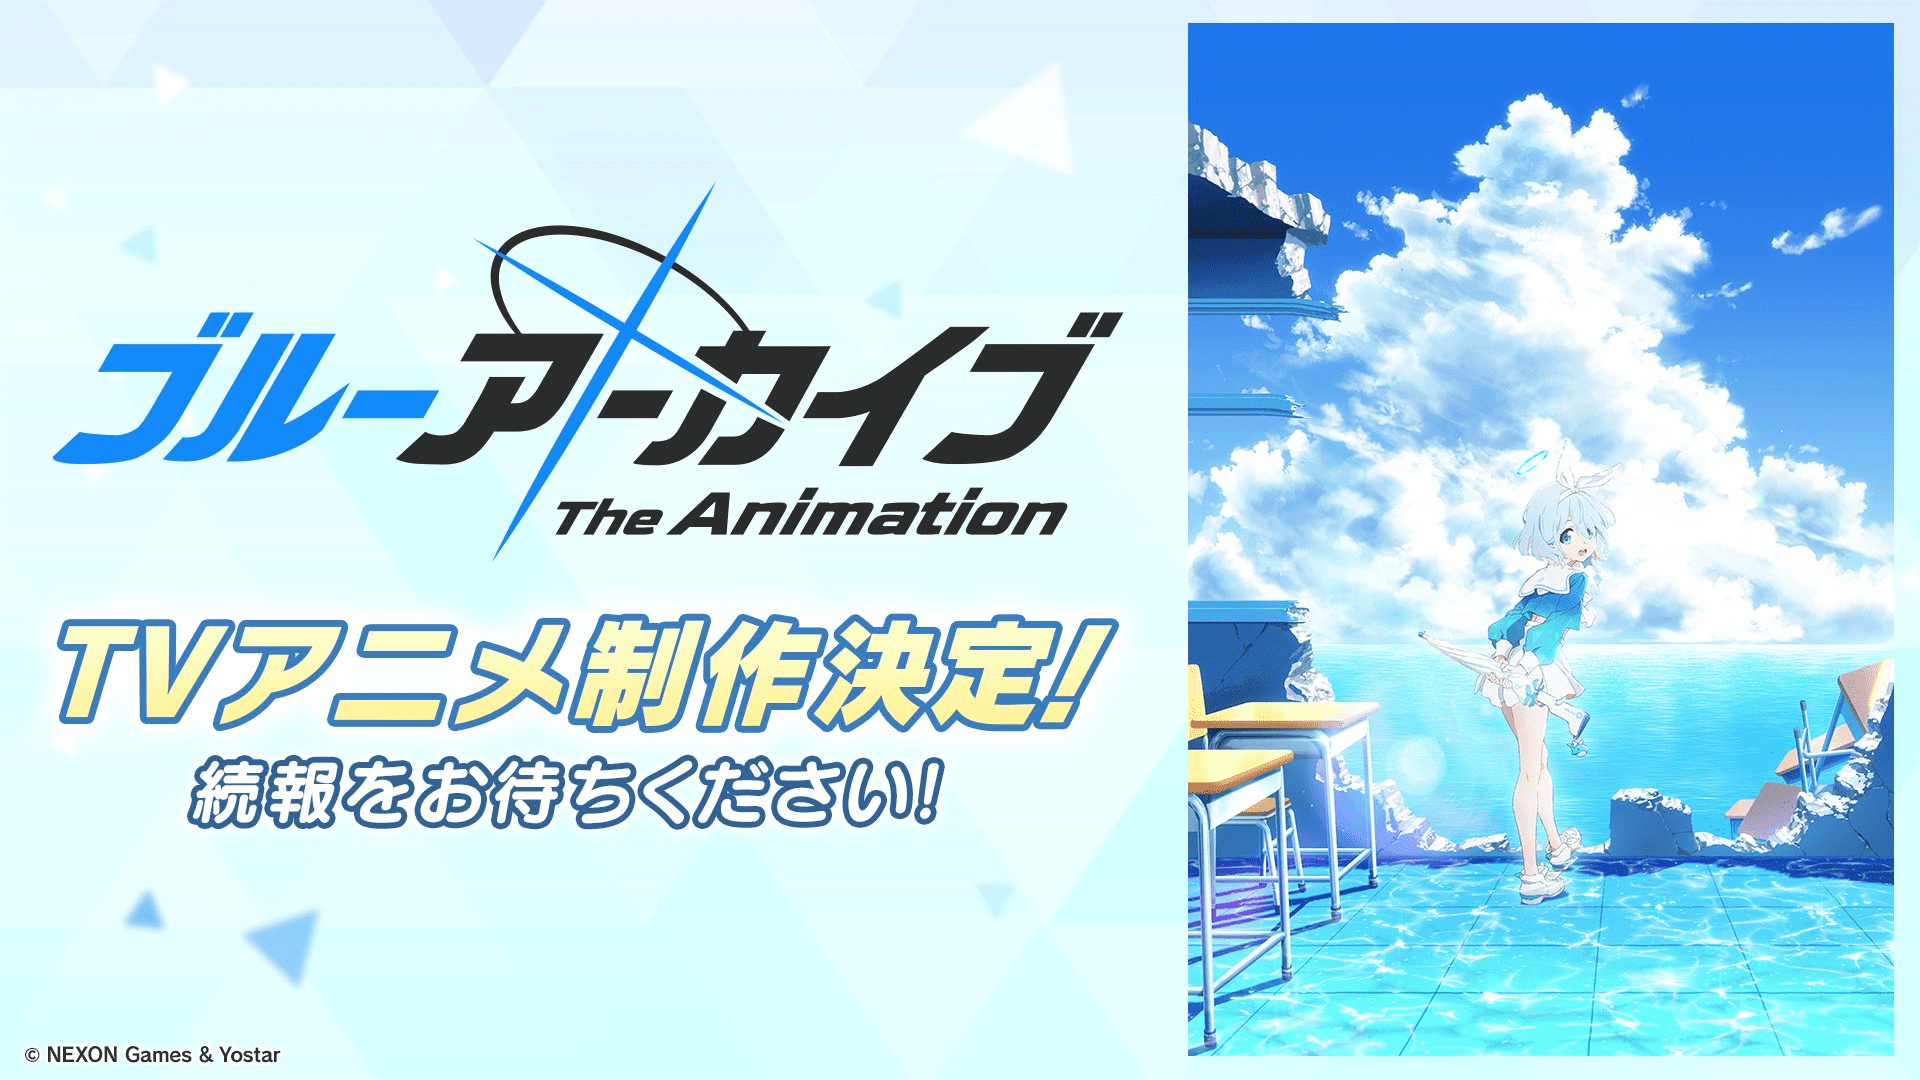 【影视动漫】NEXON手游《碧蓝档案》宣布 游戏将推出TV动画-第0张